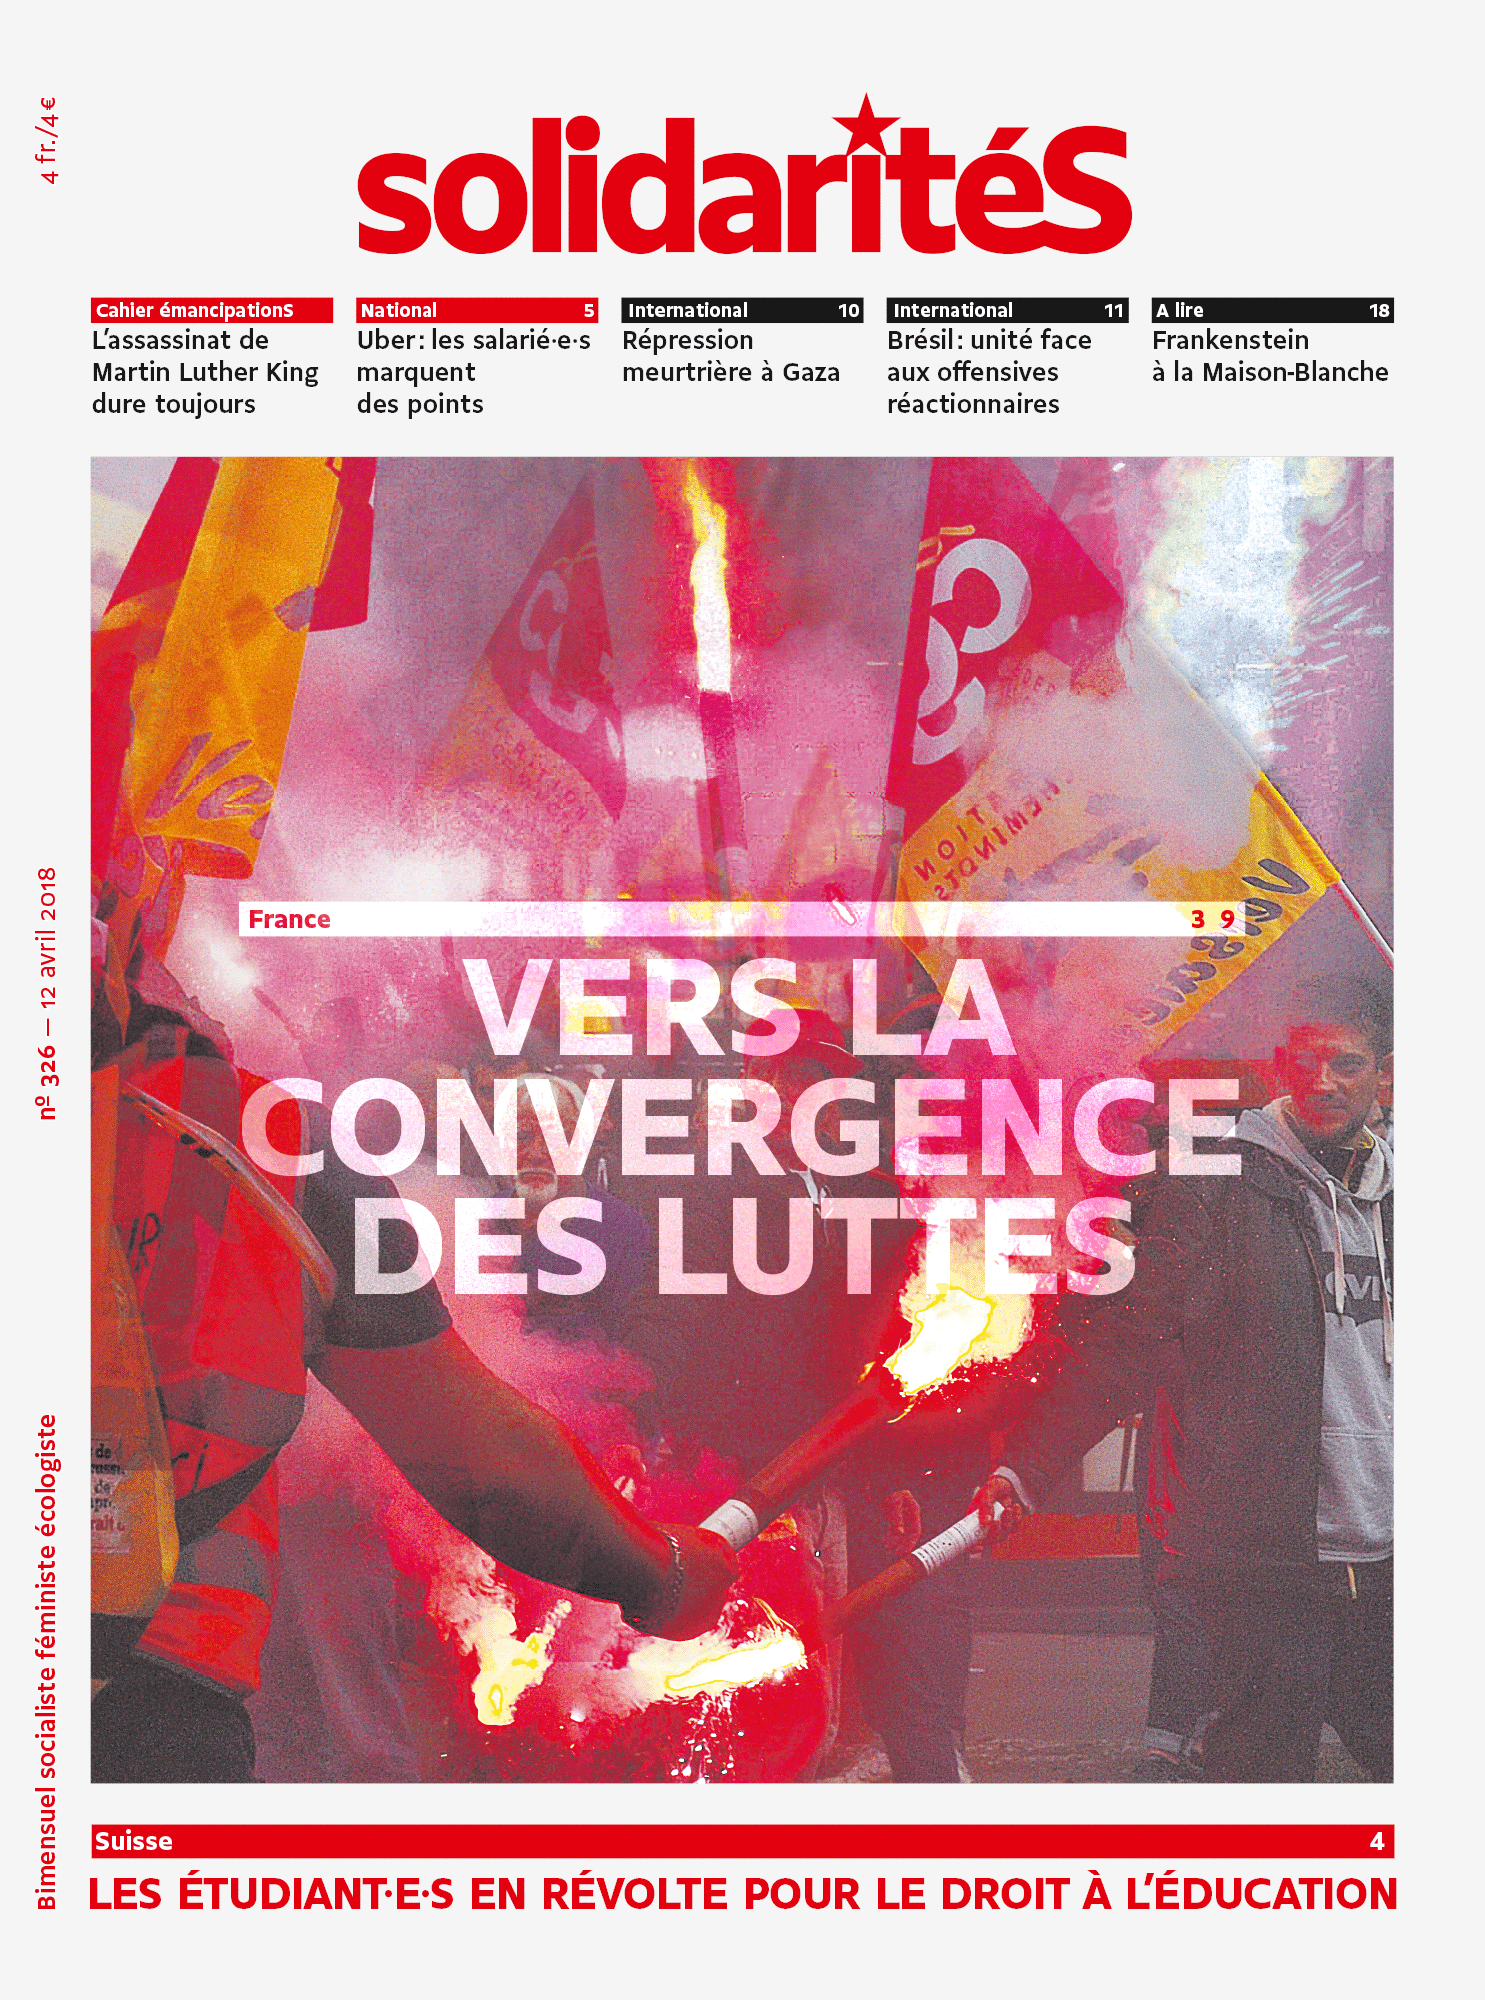 Couverture du numéro 326 du bimensuel solidaritéS: France: vers la convergence des luttes